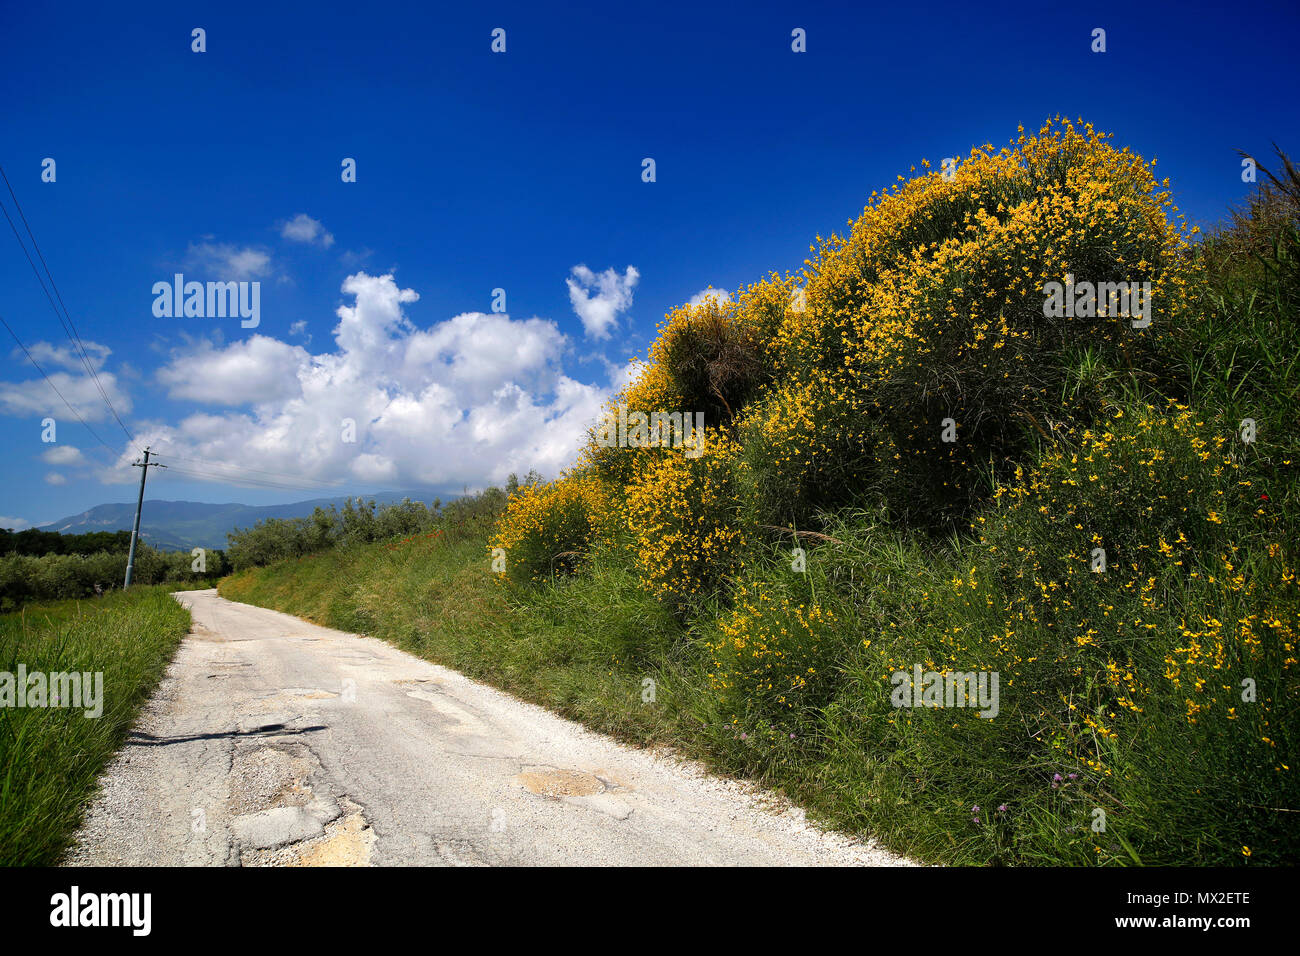 San Vincenzo, Italien. Wild Besen am Straßenrand vor einem blauen Himmel mit Wolken. Stockfoto